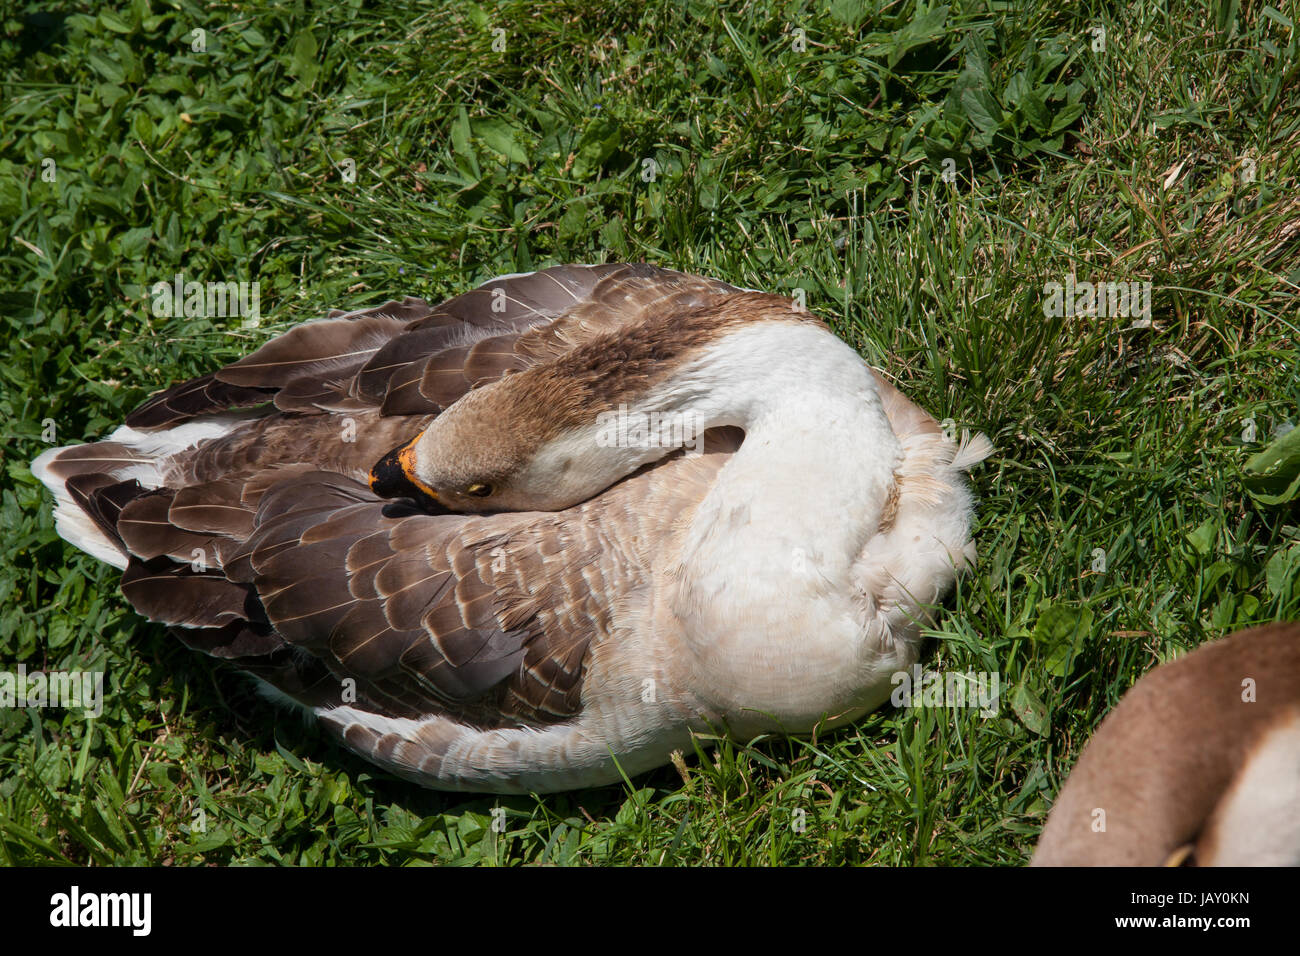 Cigni oca uccello acqua resto al sole in estate. La fauna nel parco naturale Foto Stock